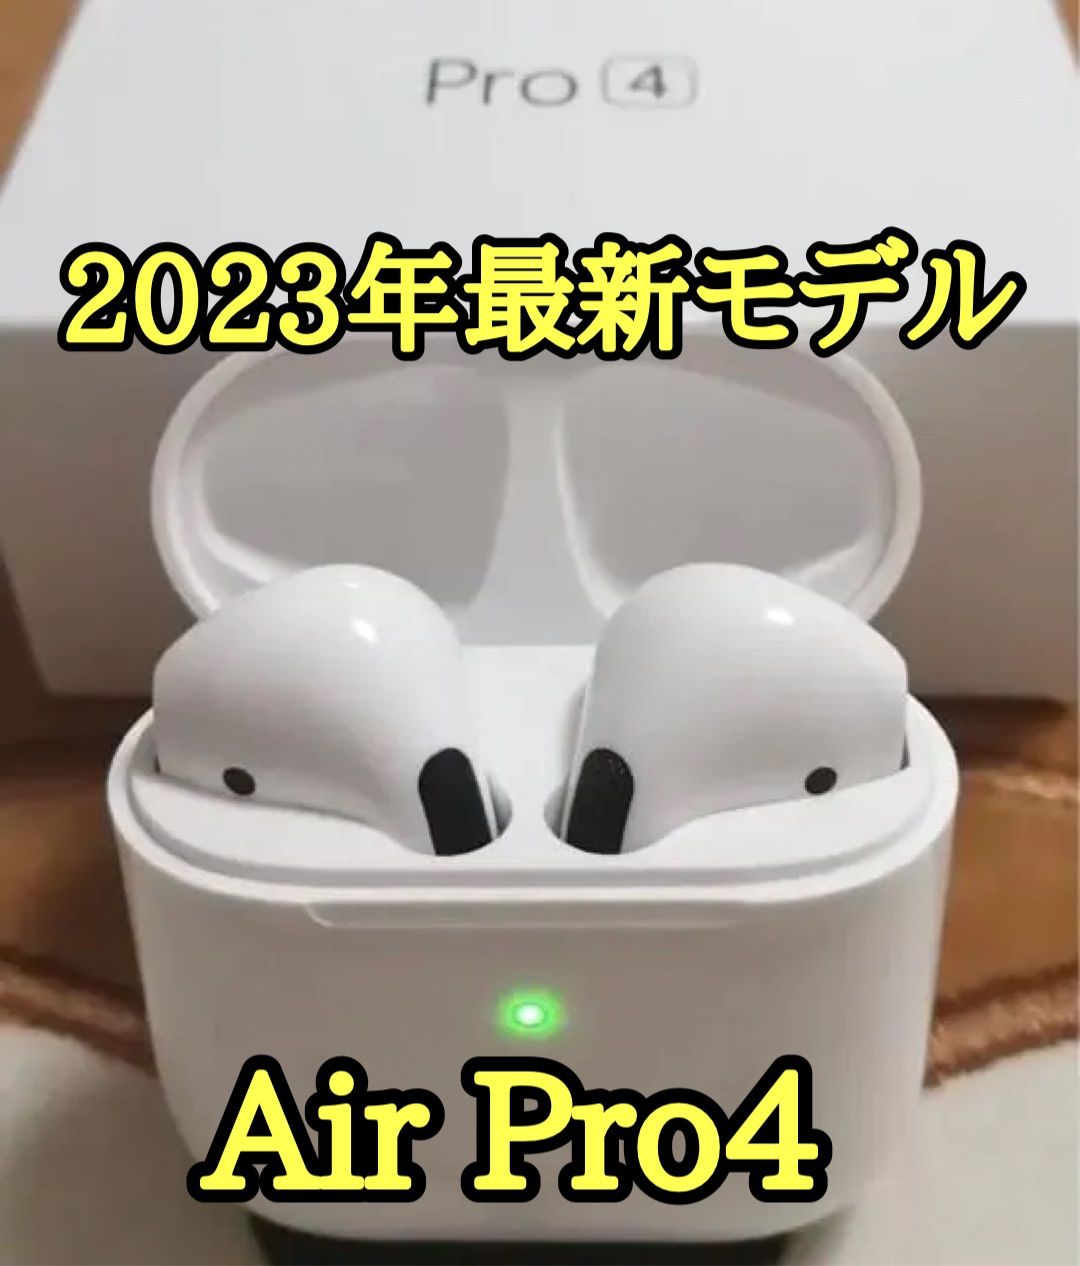 最上の品質な AirPro4 Bluetoothワイヤレスイヤホン 箱なし